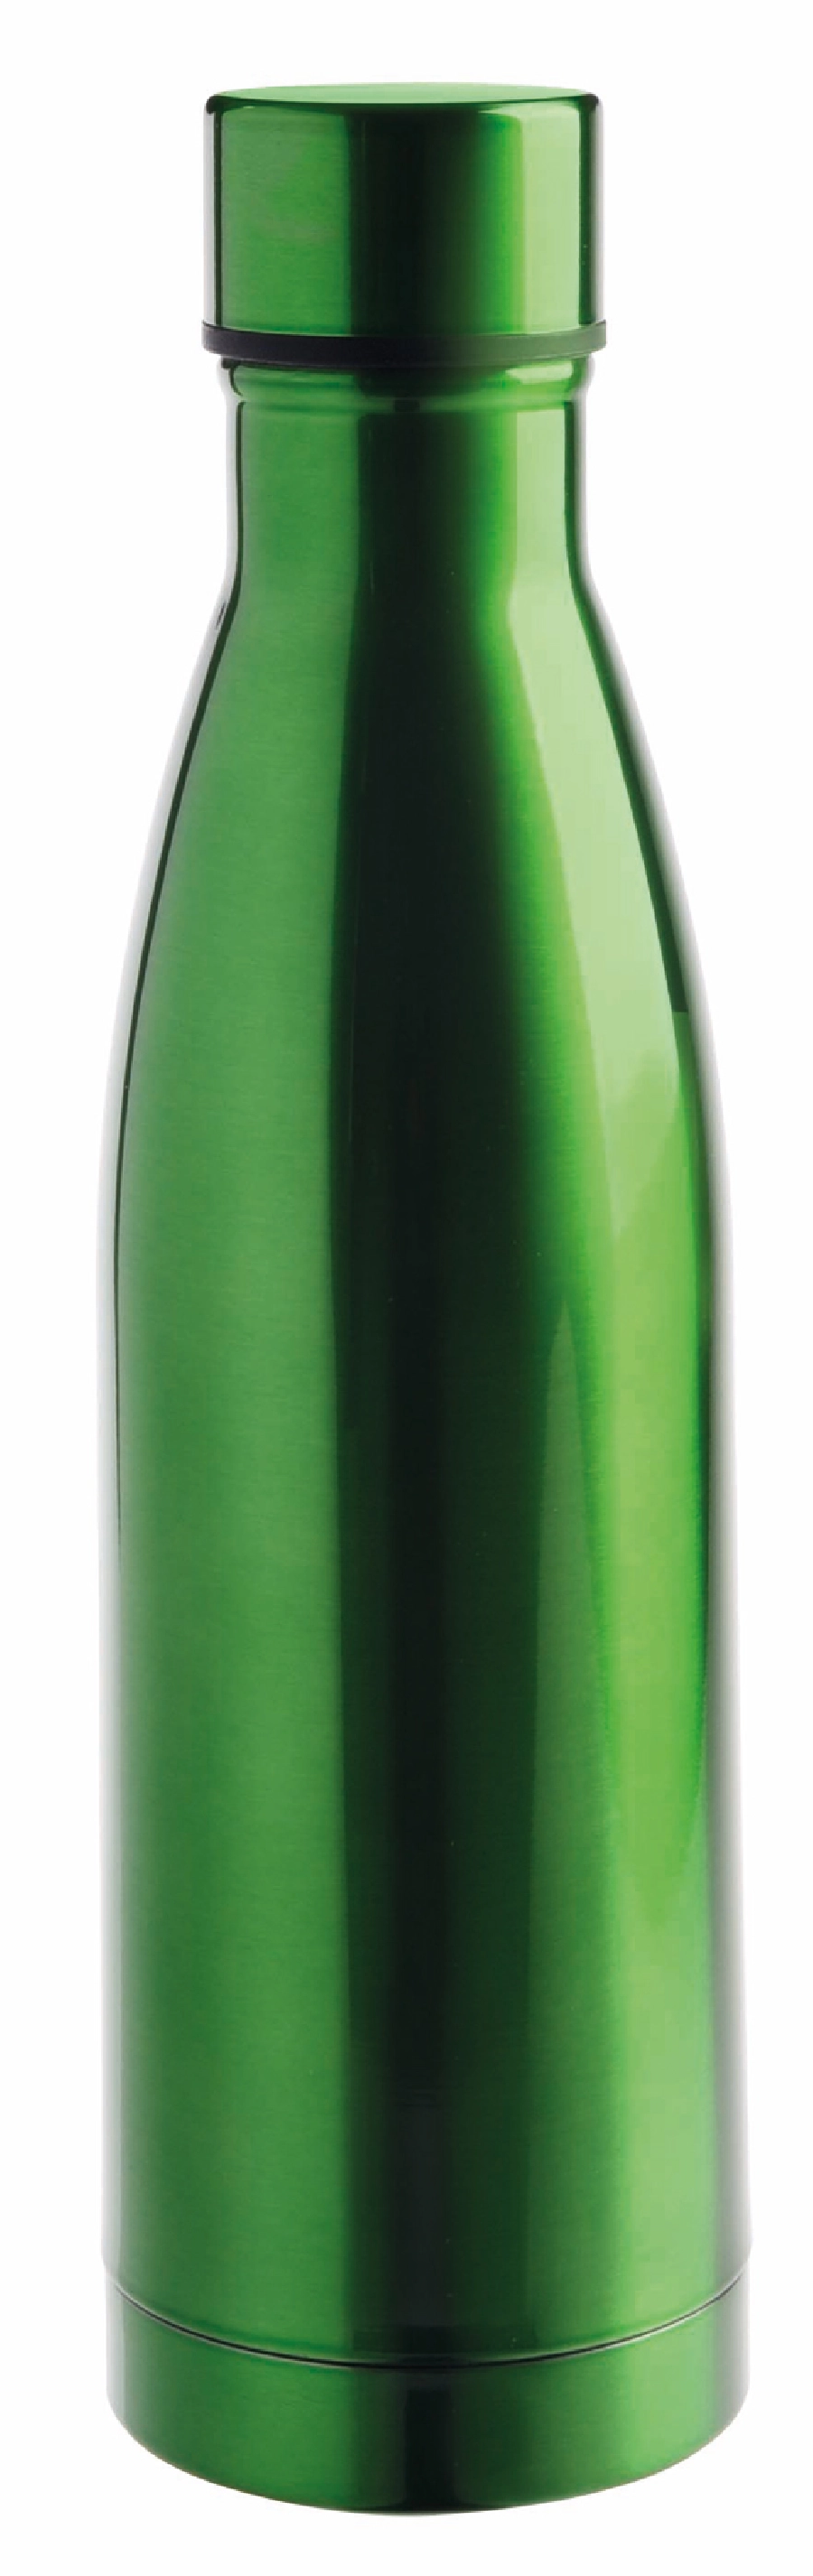 Butelka próżniowa LEGENDY, zielone jabłko 56-0304555